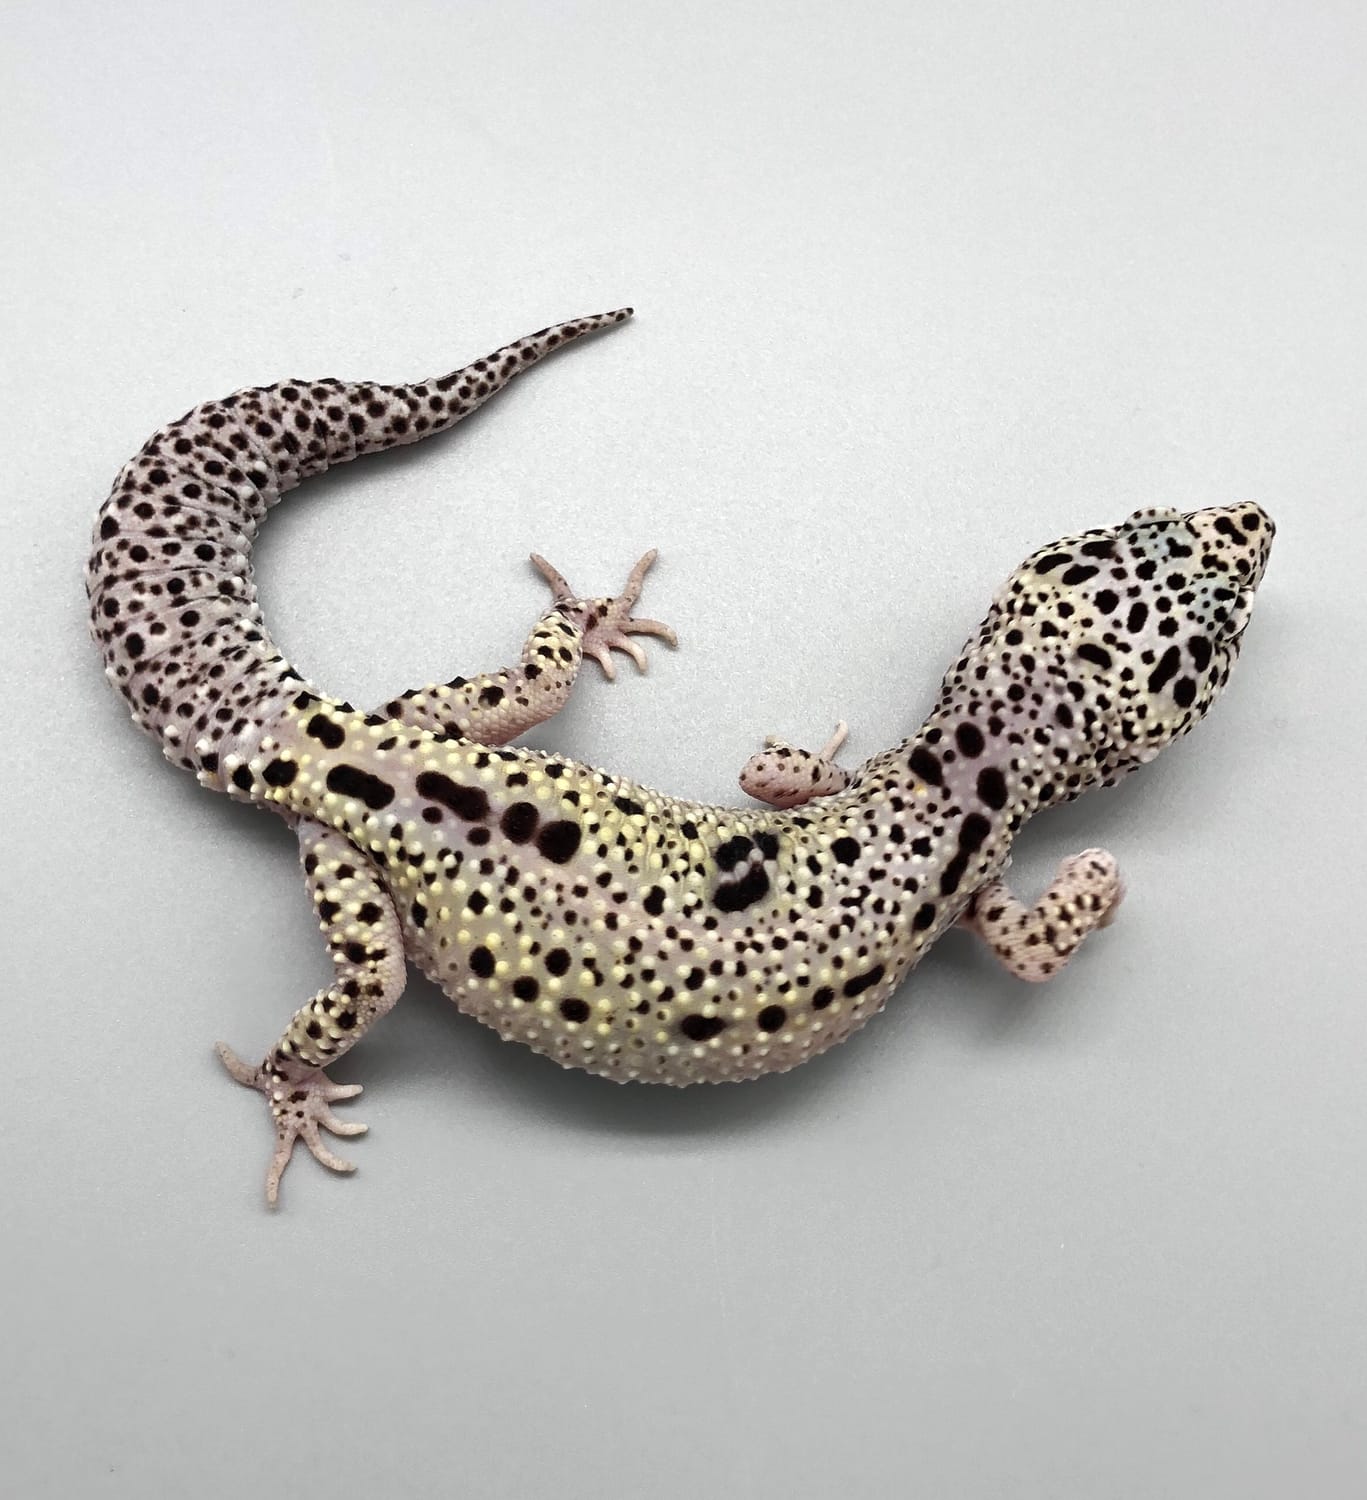 Mack Snow Enigma Leopard Gecko by Luna Geckos